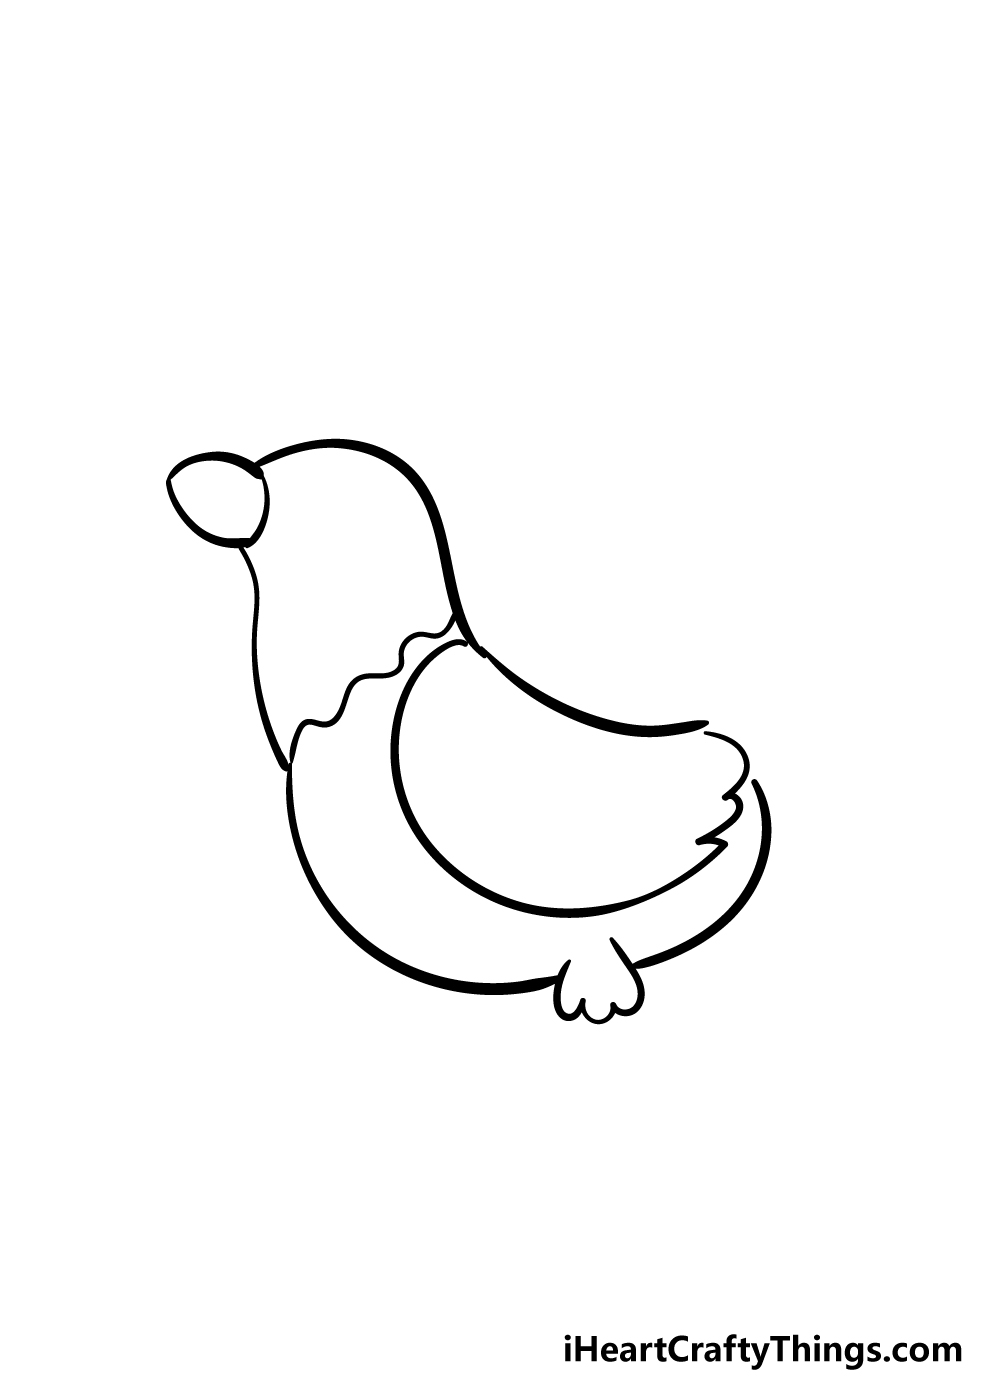 Chicken4 - Cách vẽ con gà đơn giản đẹp với 8 bước cơ bản hướng dẫn chi tiết